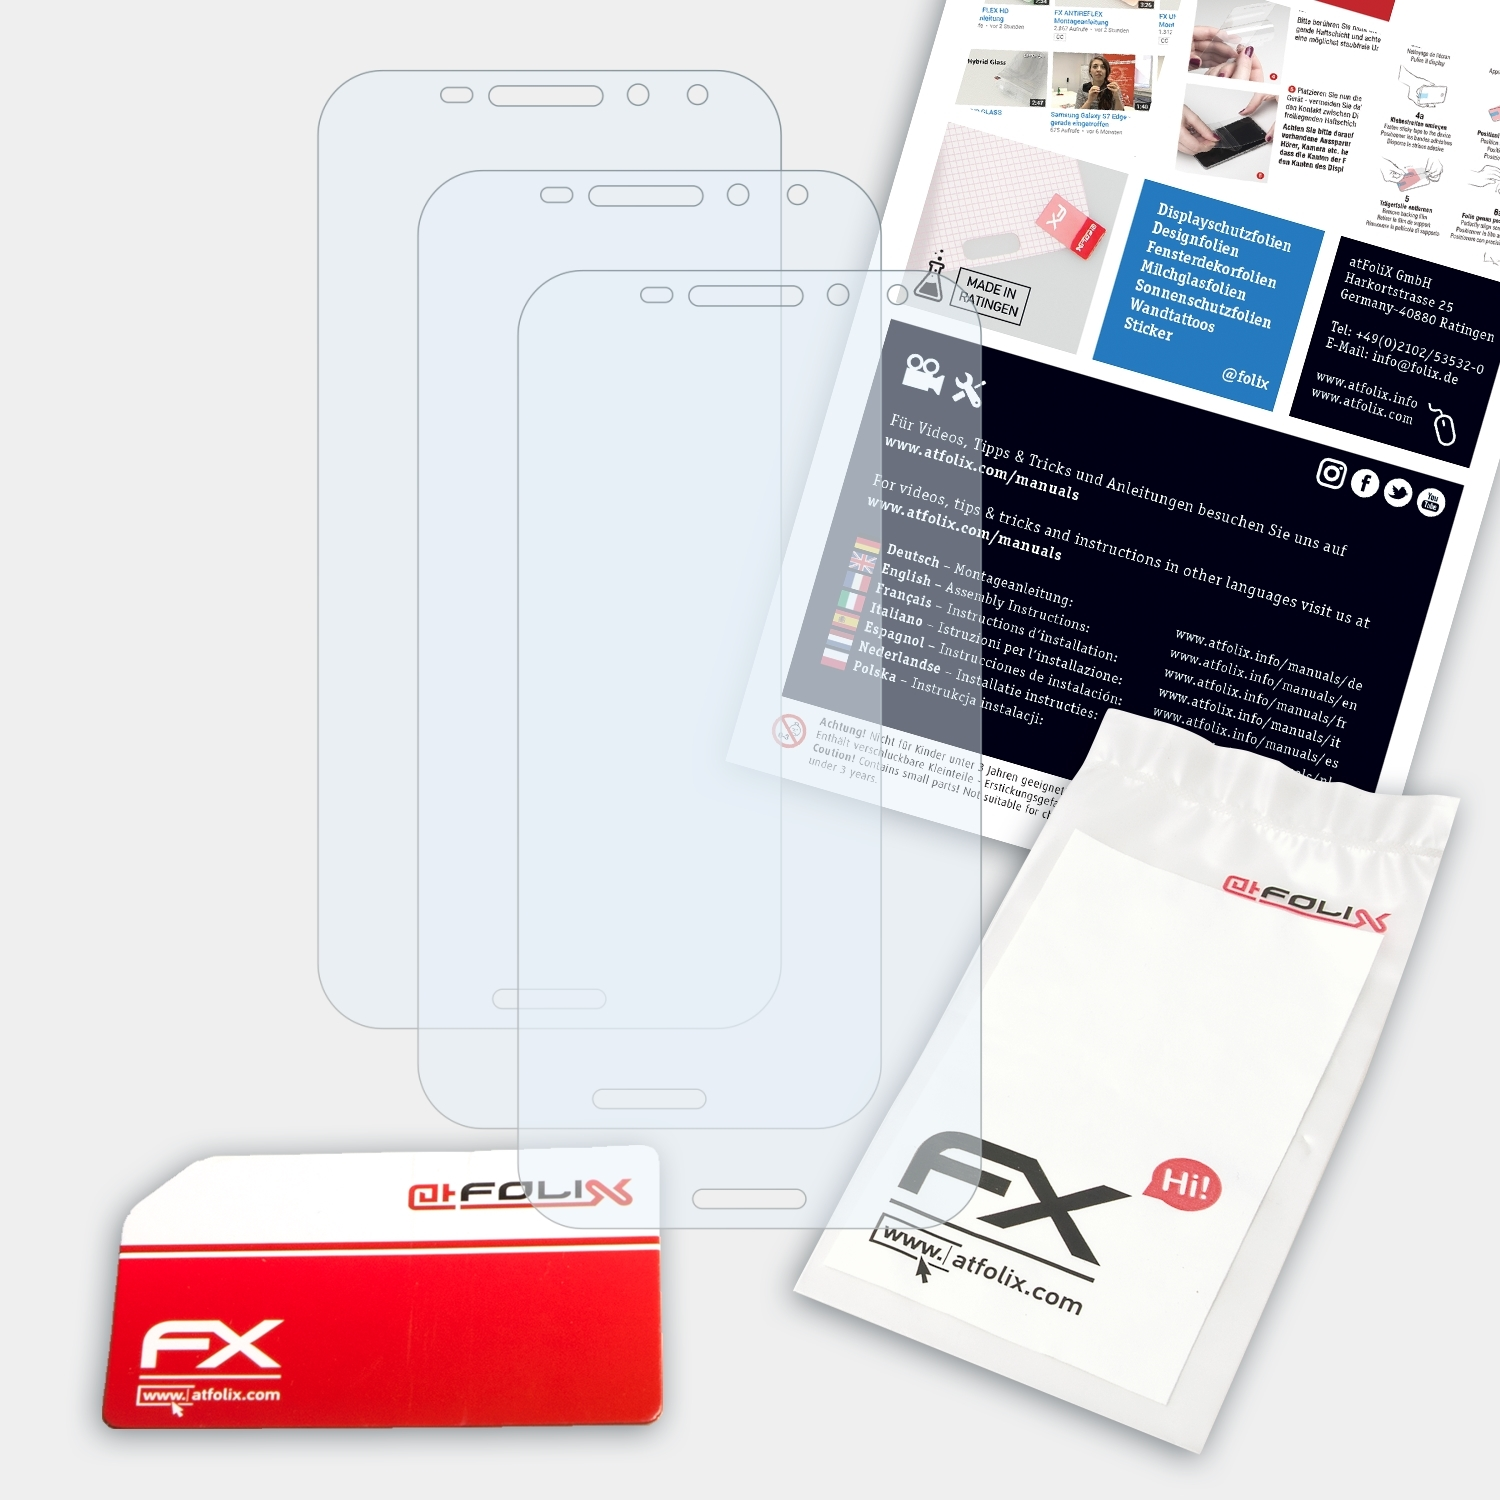 FX-Clear Displayschutz(für N8) 3x Smart Vodafone ATFOLIX